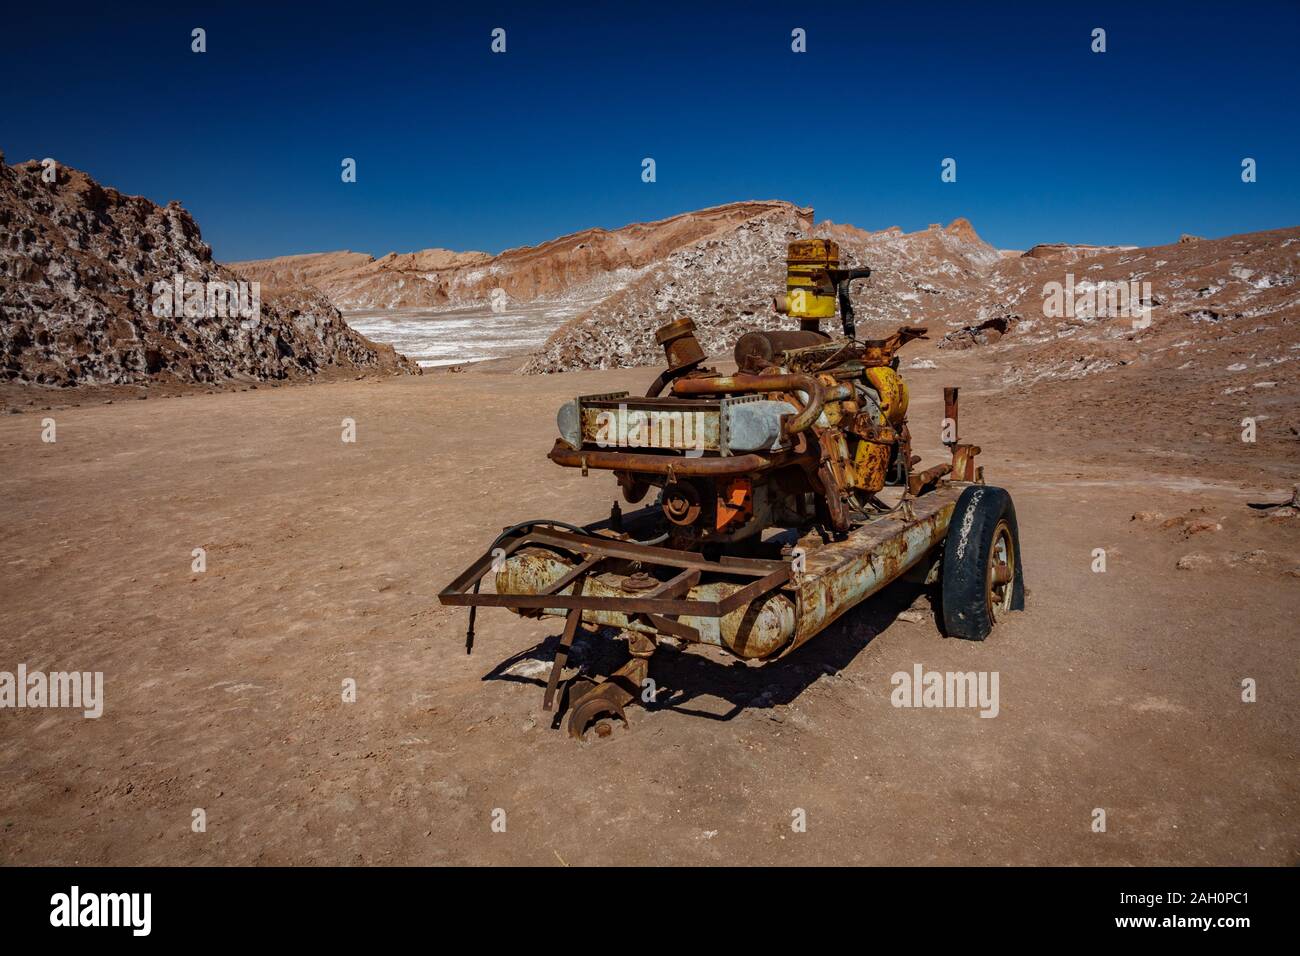 Machine abandonnée dans le désert de sel pour l'industrie minière Banque D'Images